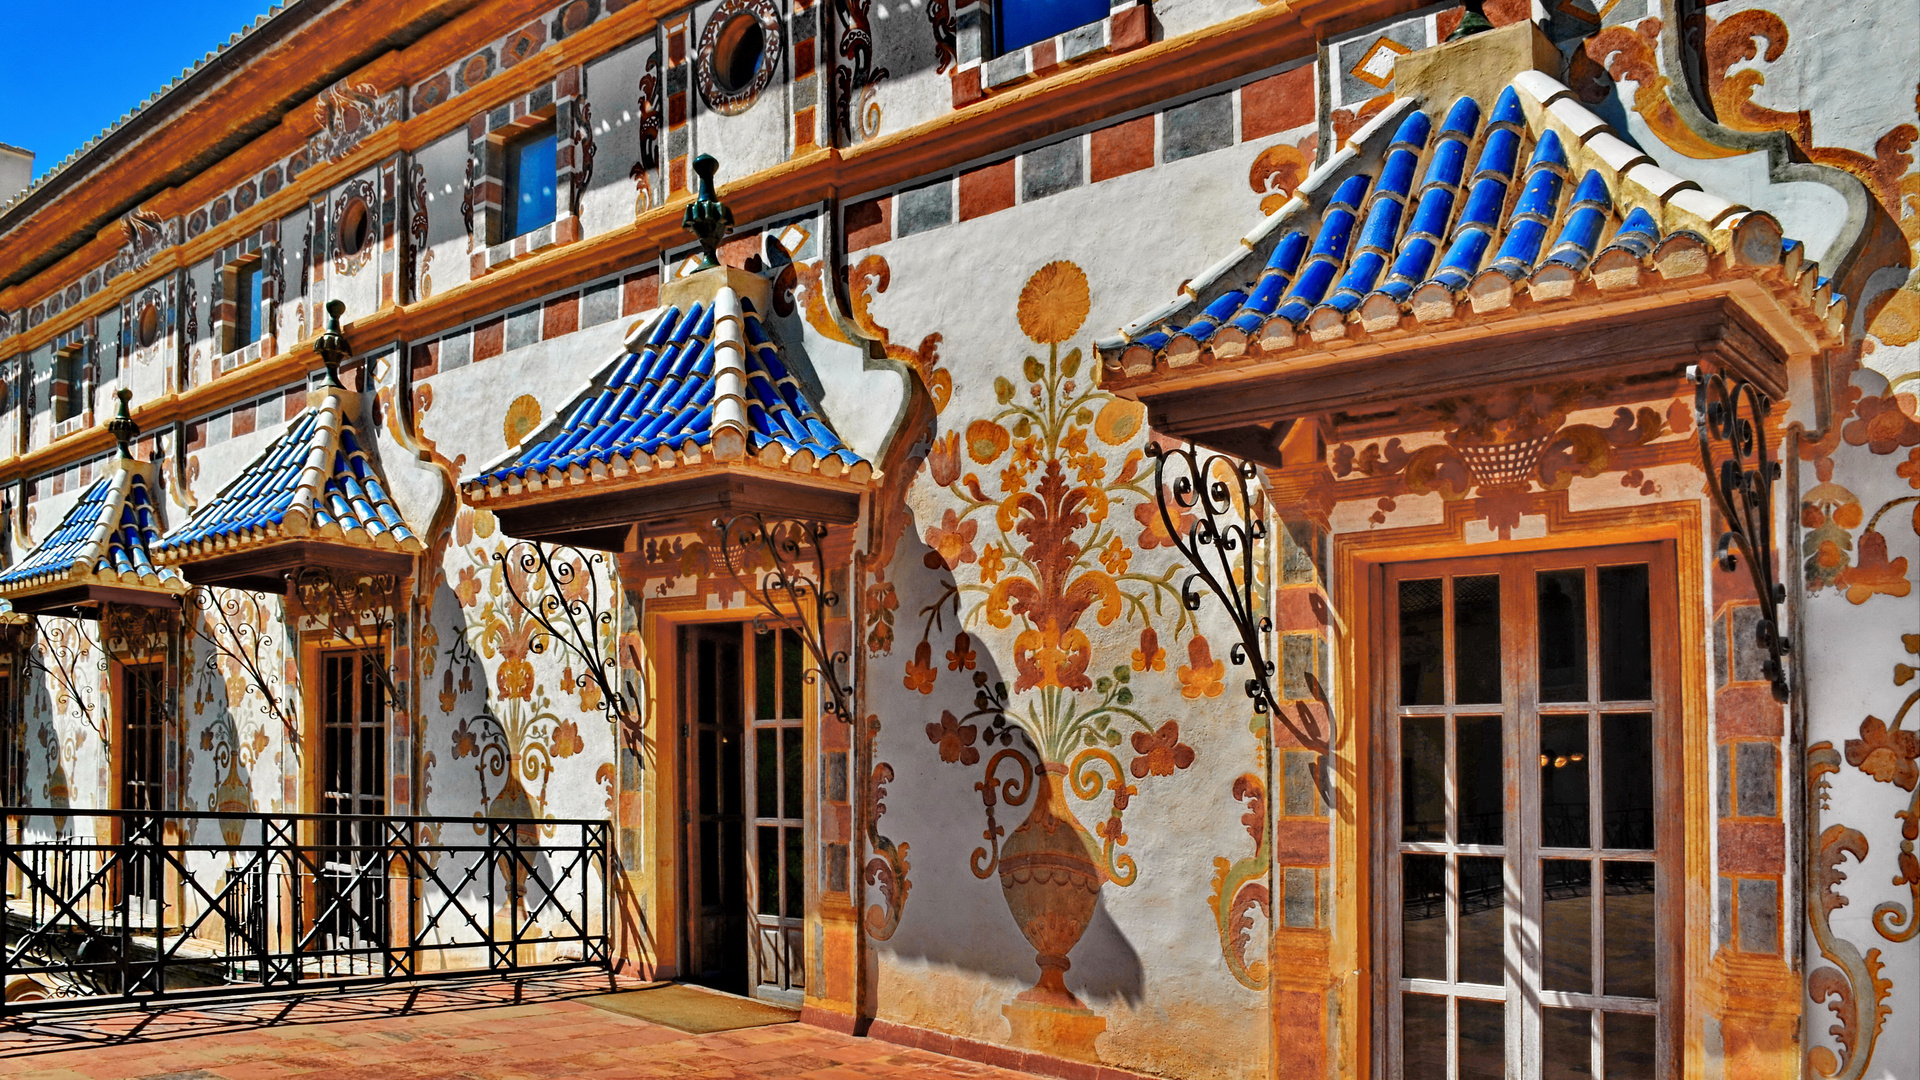 Gandía: Palacio Ducal, Fassade im Innenhof